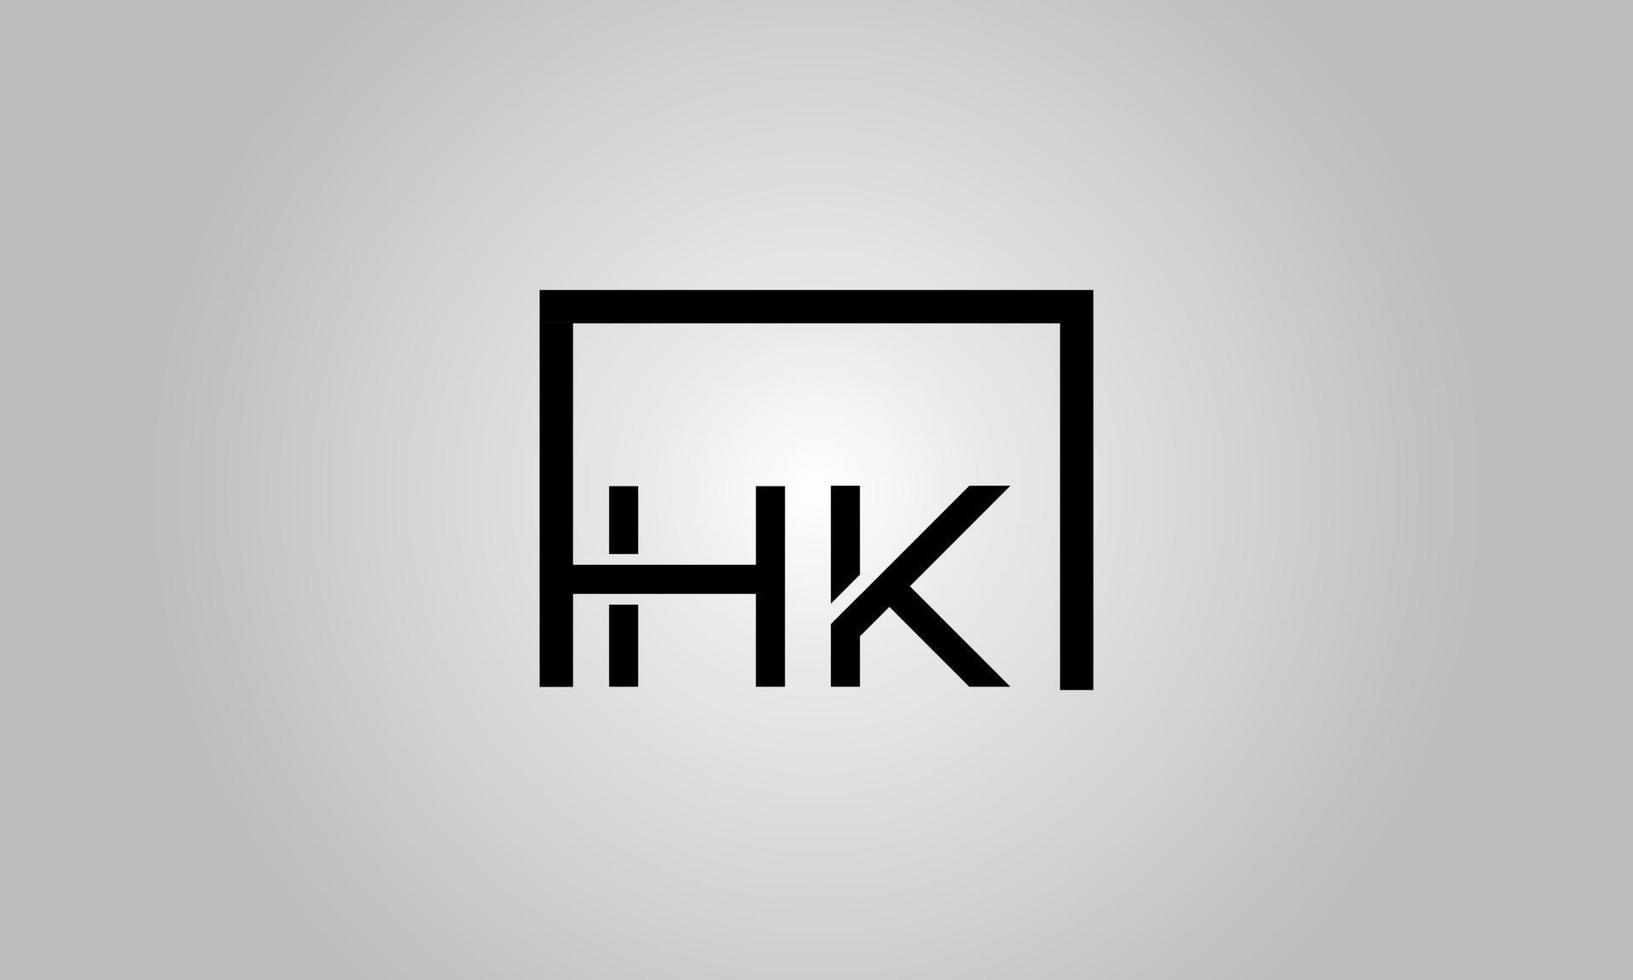 création de logo lettre hk. logo hk avec forme carrée dans le modèle vectoriel gratuit de couleurs noires.